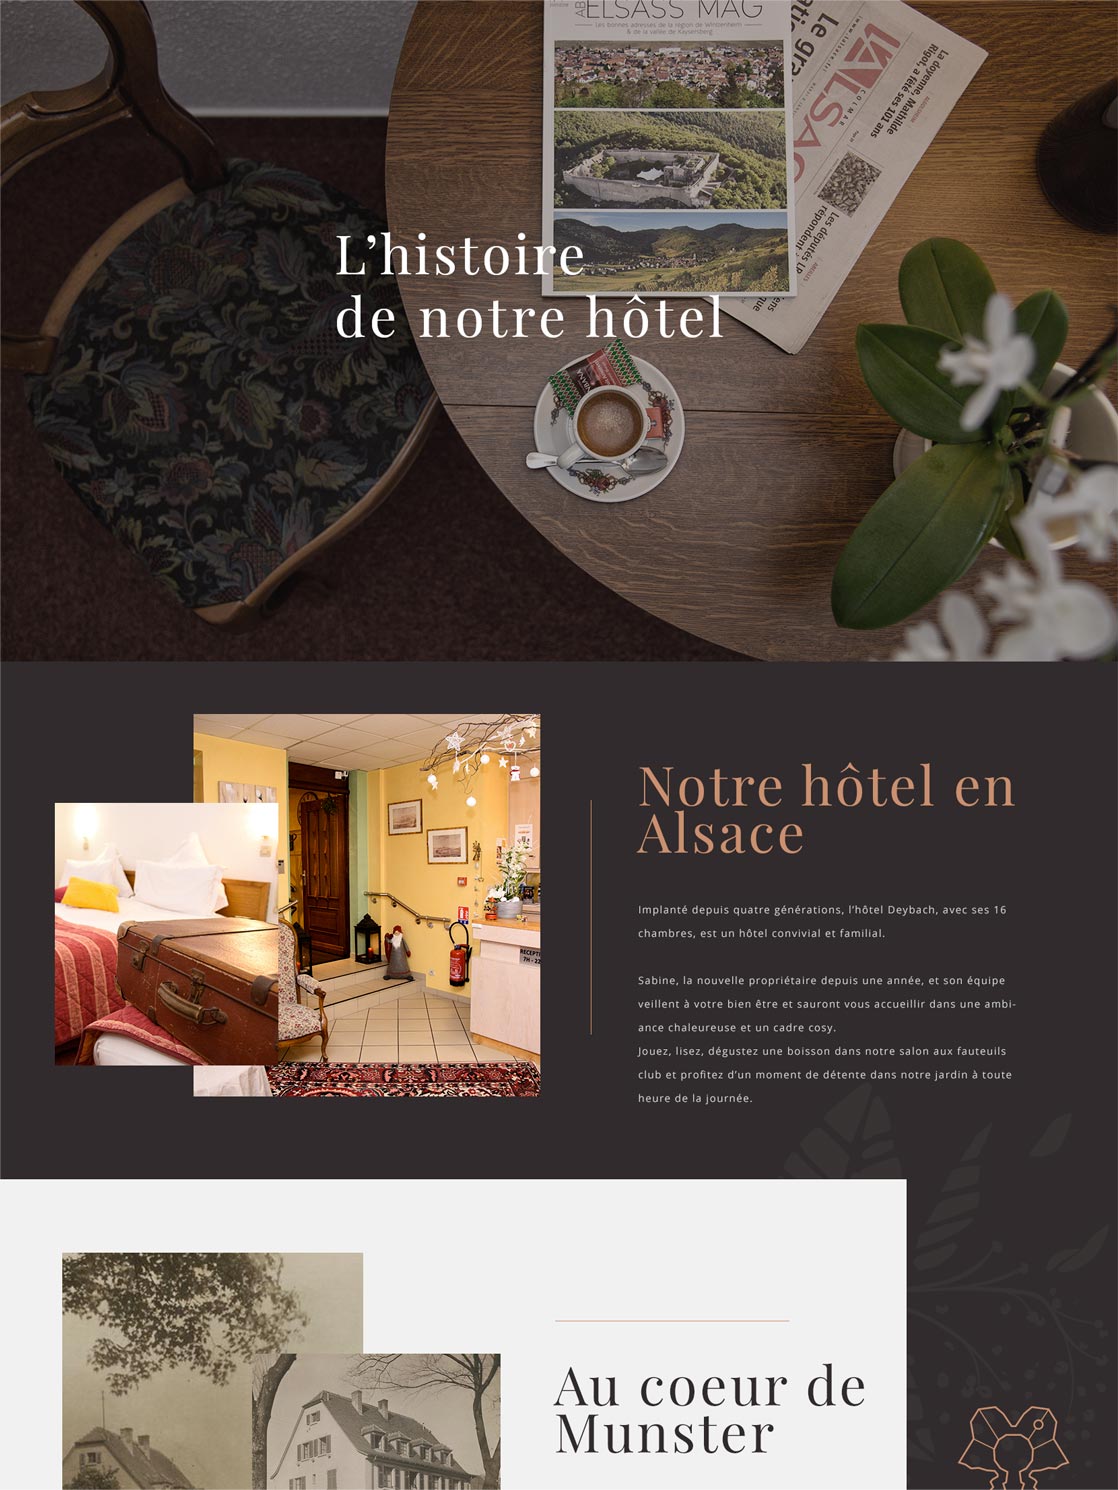 Site internet de l'Hôtel Deybach